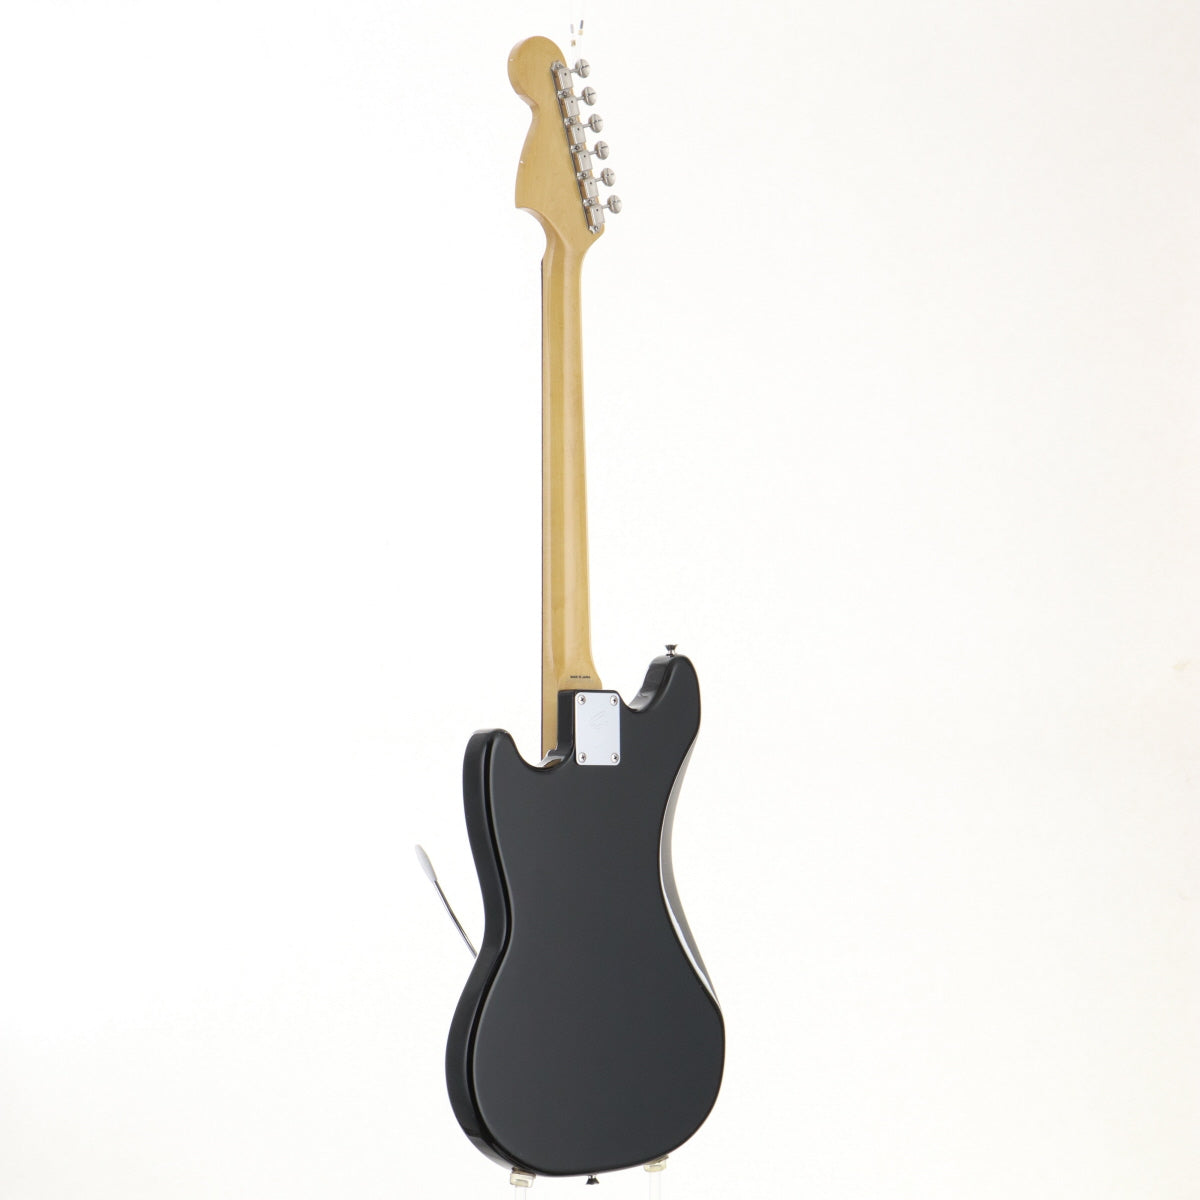 [SN JD12027952] USED Fender Japan / MG69 Black [03]